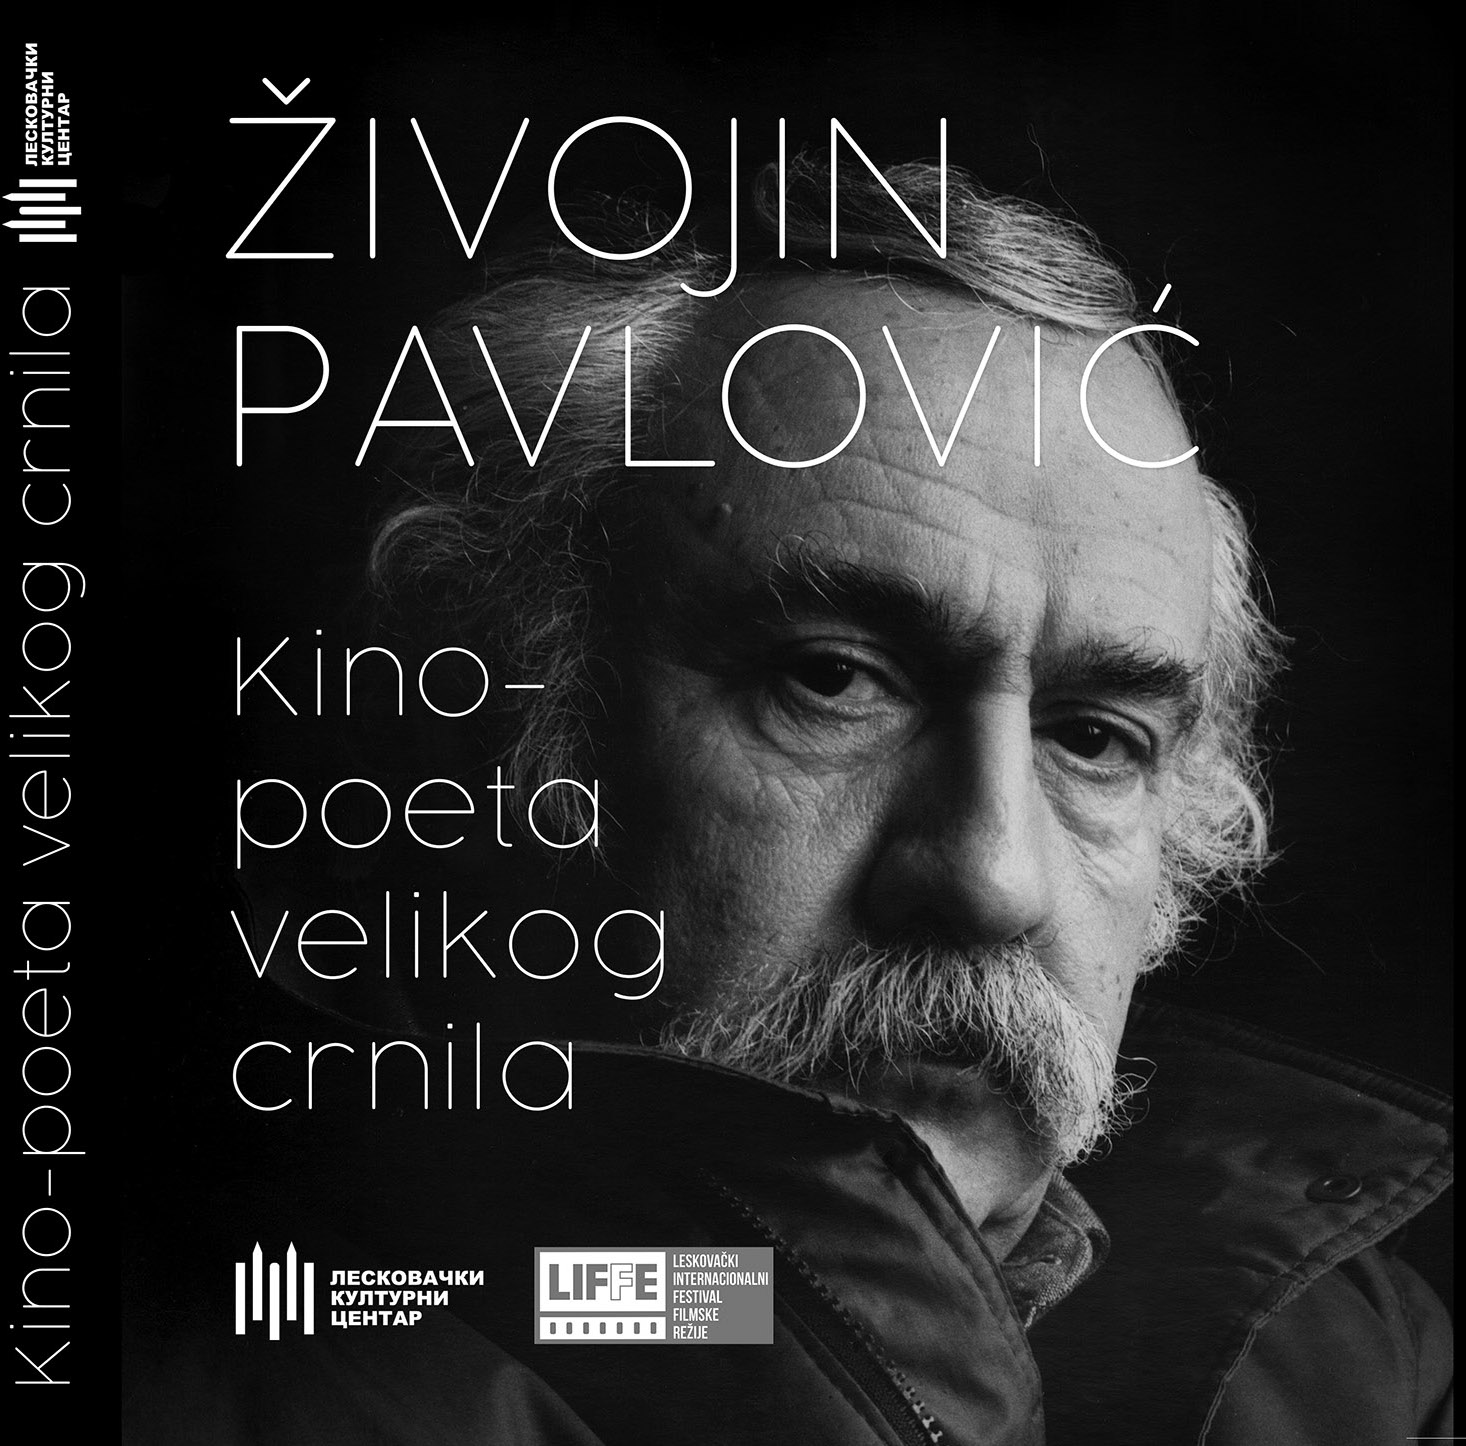 Predstavljena monografija o Živojinu Žiki Pavloviću: Kino-poeta čiji je duh ostao uzor i ideal 2